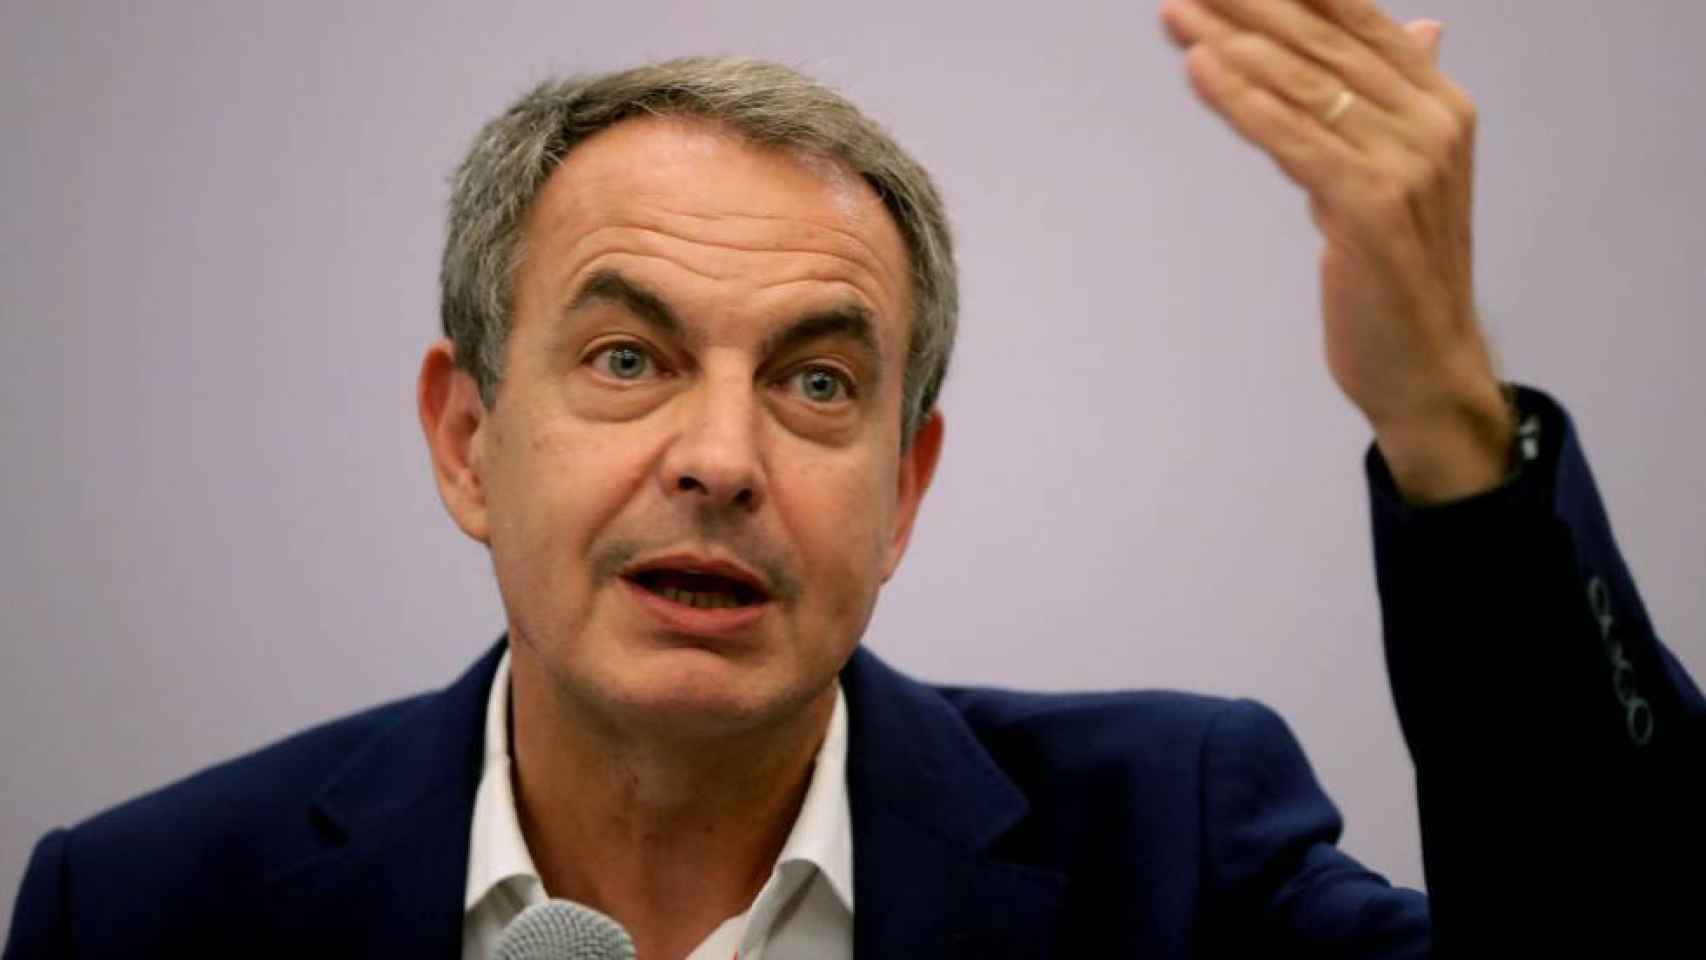 La última reforma de la financiación autonómica se produjo durante la segunda legislatura de José Luis Rodríguez Zapatero (en imagen).